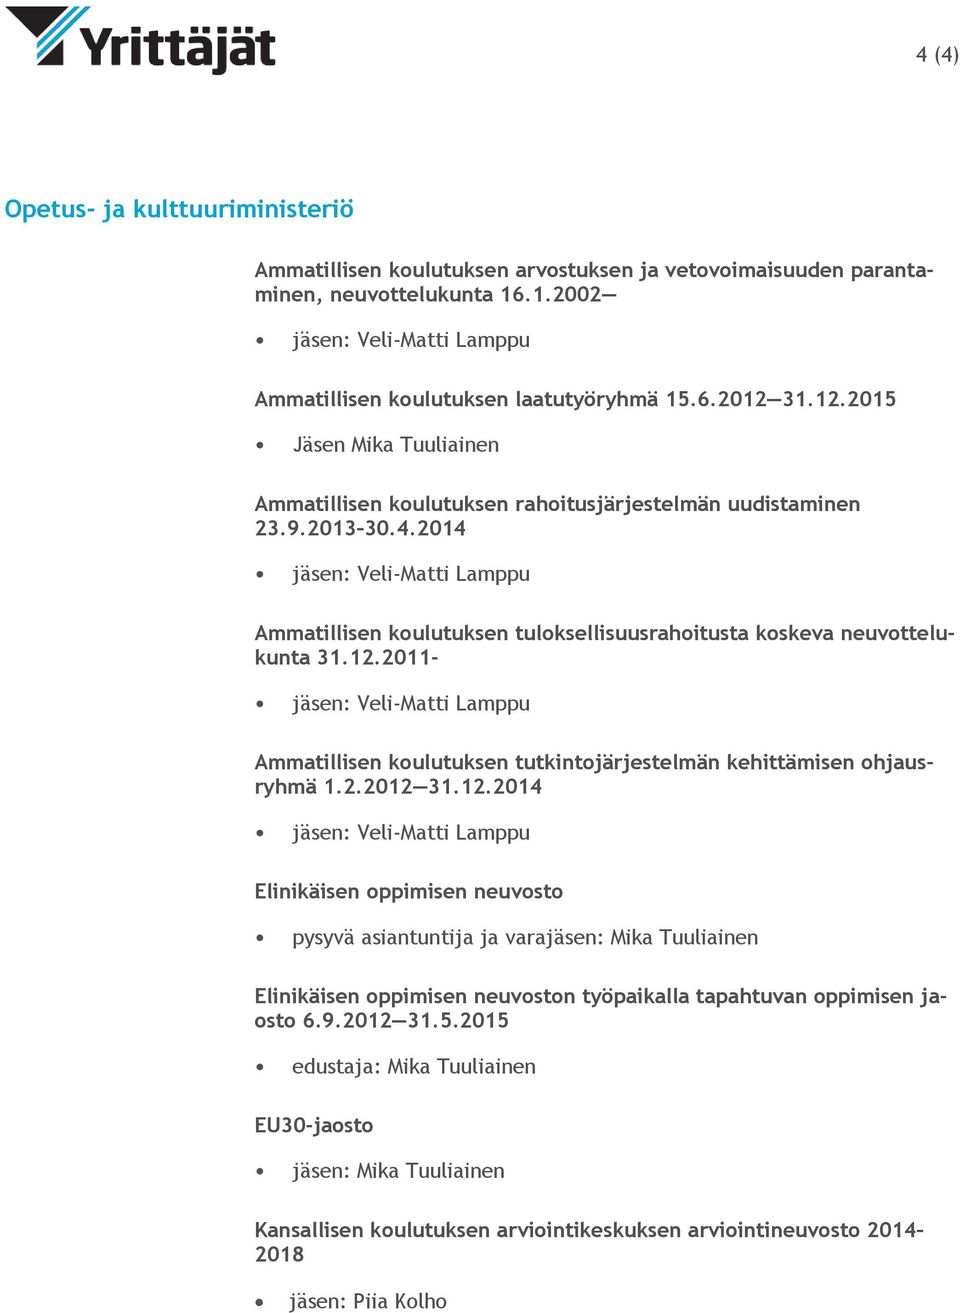 2014 jäsen: Veli-Matti Lamppu Ammatillisen koulutuksen tuloksellisuusrahoitusta koskeva neuvottelukunta 31.12.